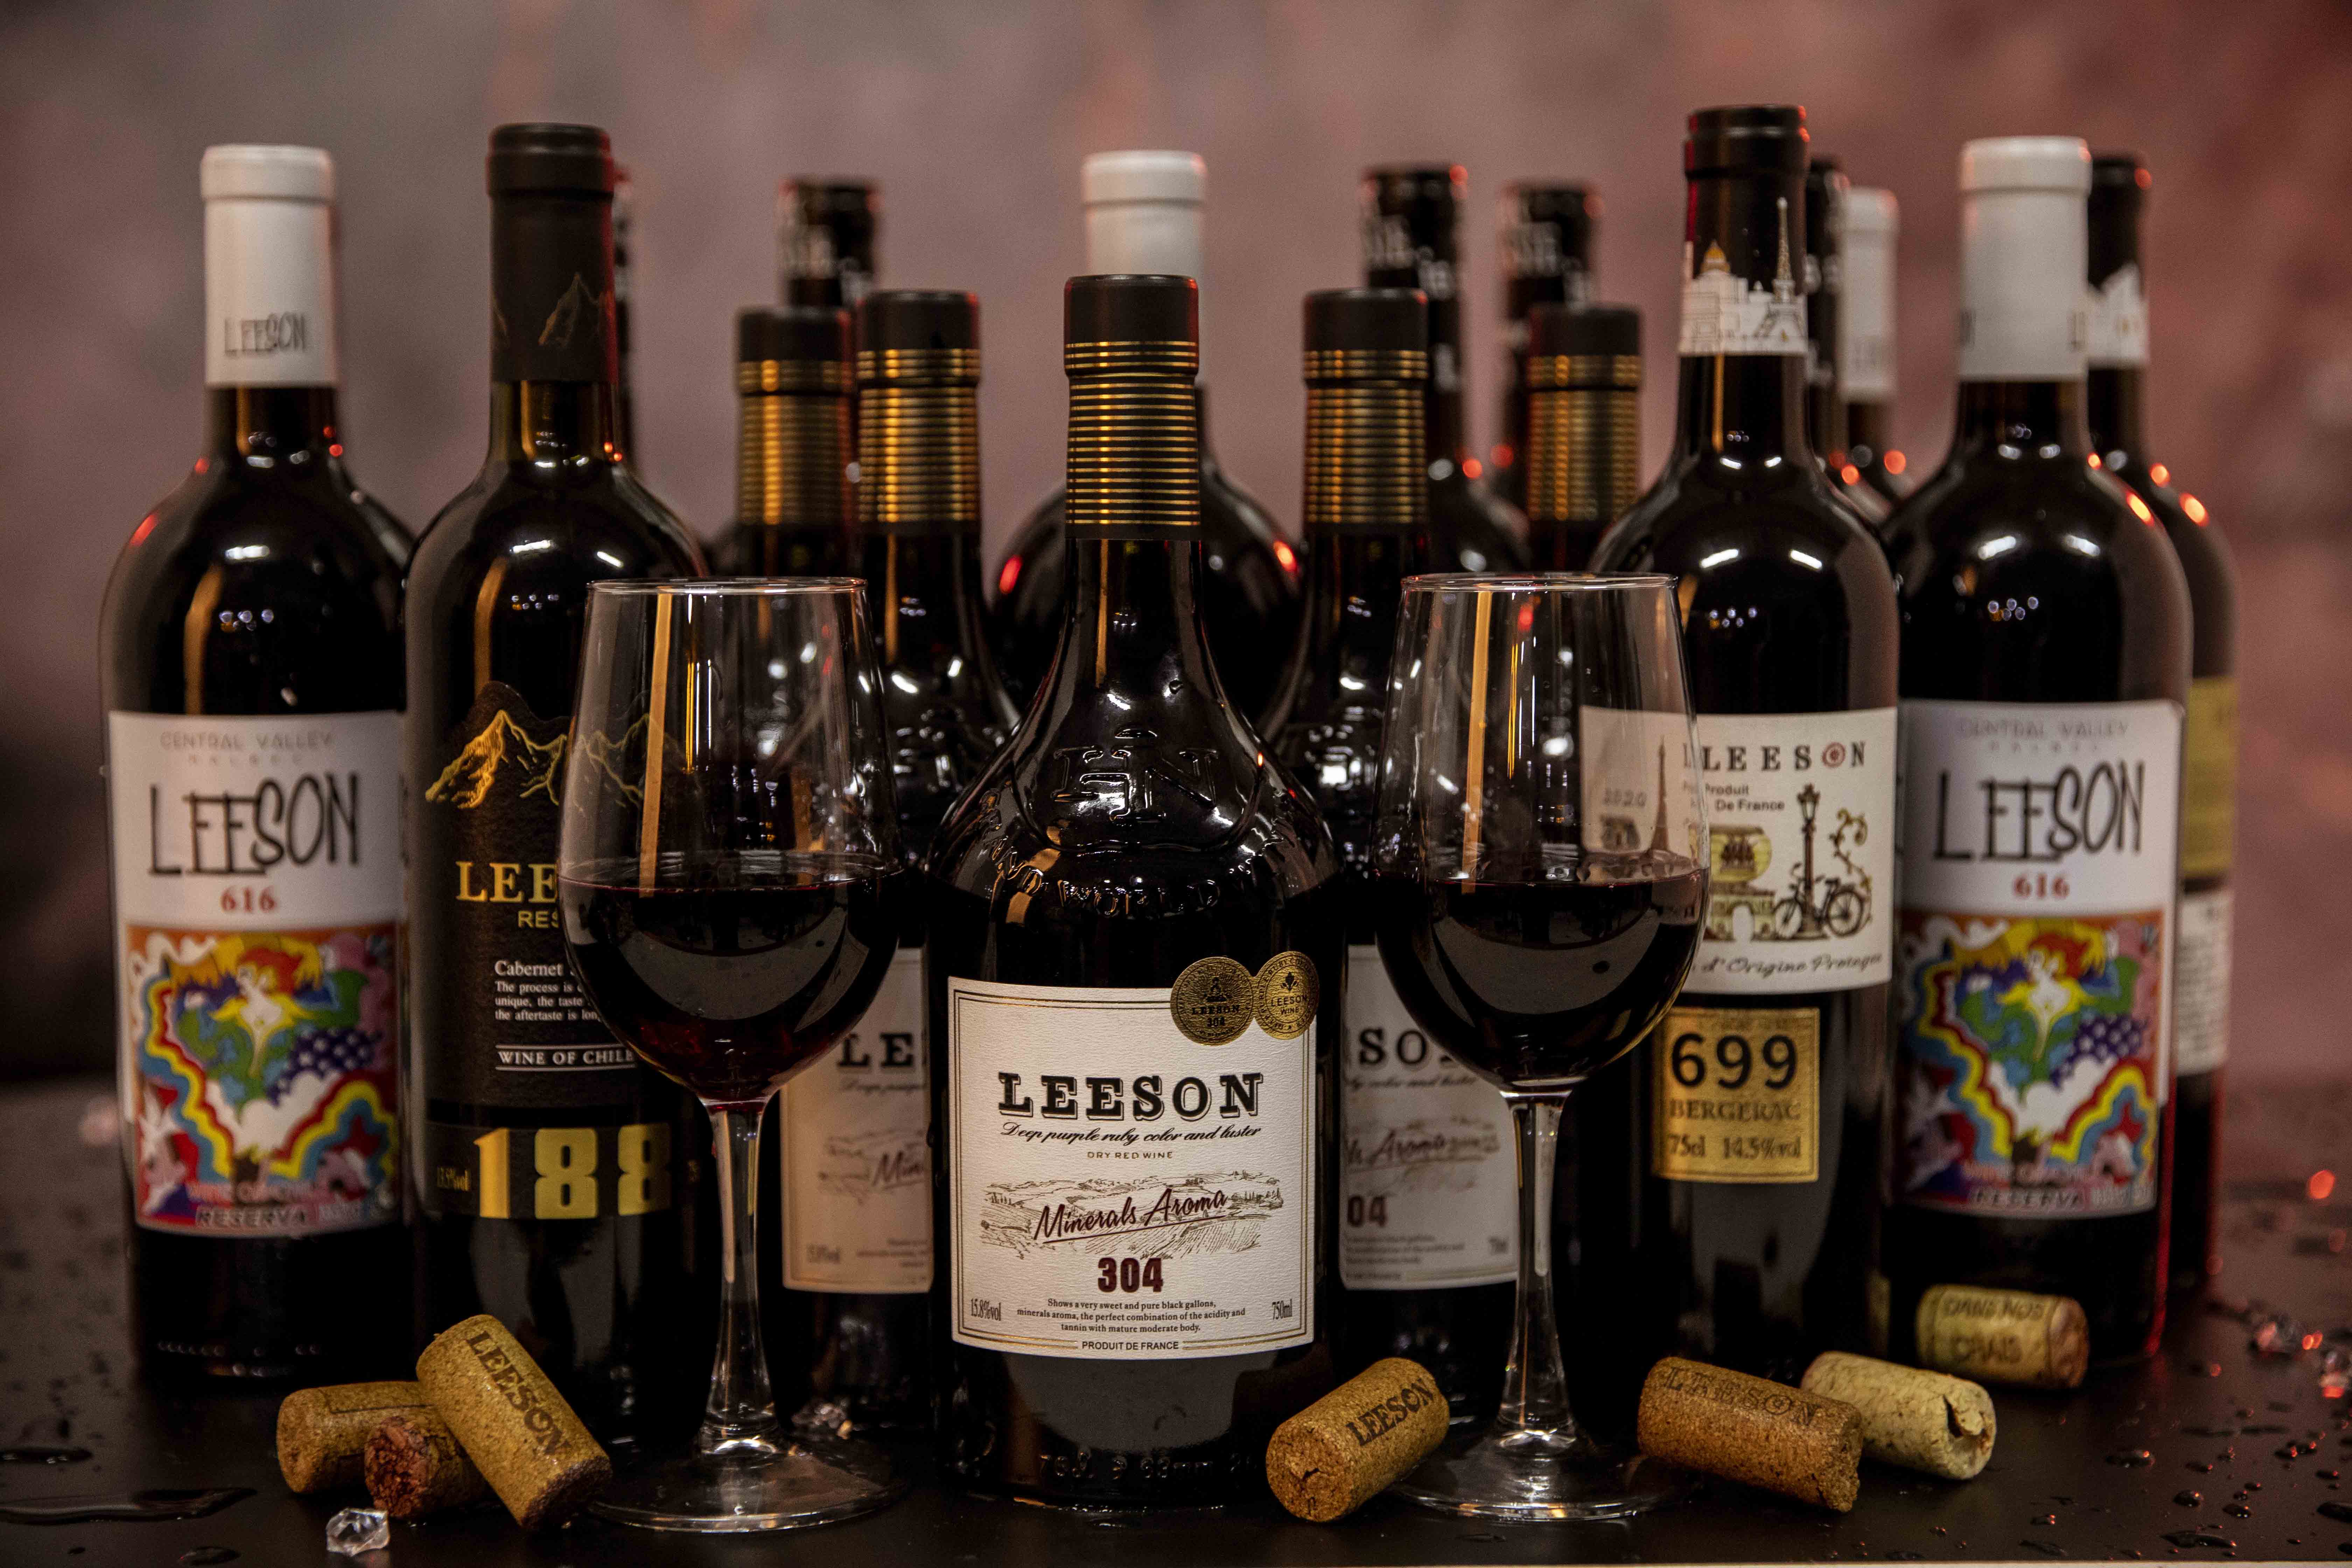 雲倉酒莊的品牌雷盛紅酒分享葡萄酒的起源與歷史由來